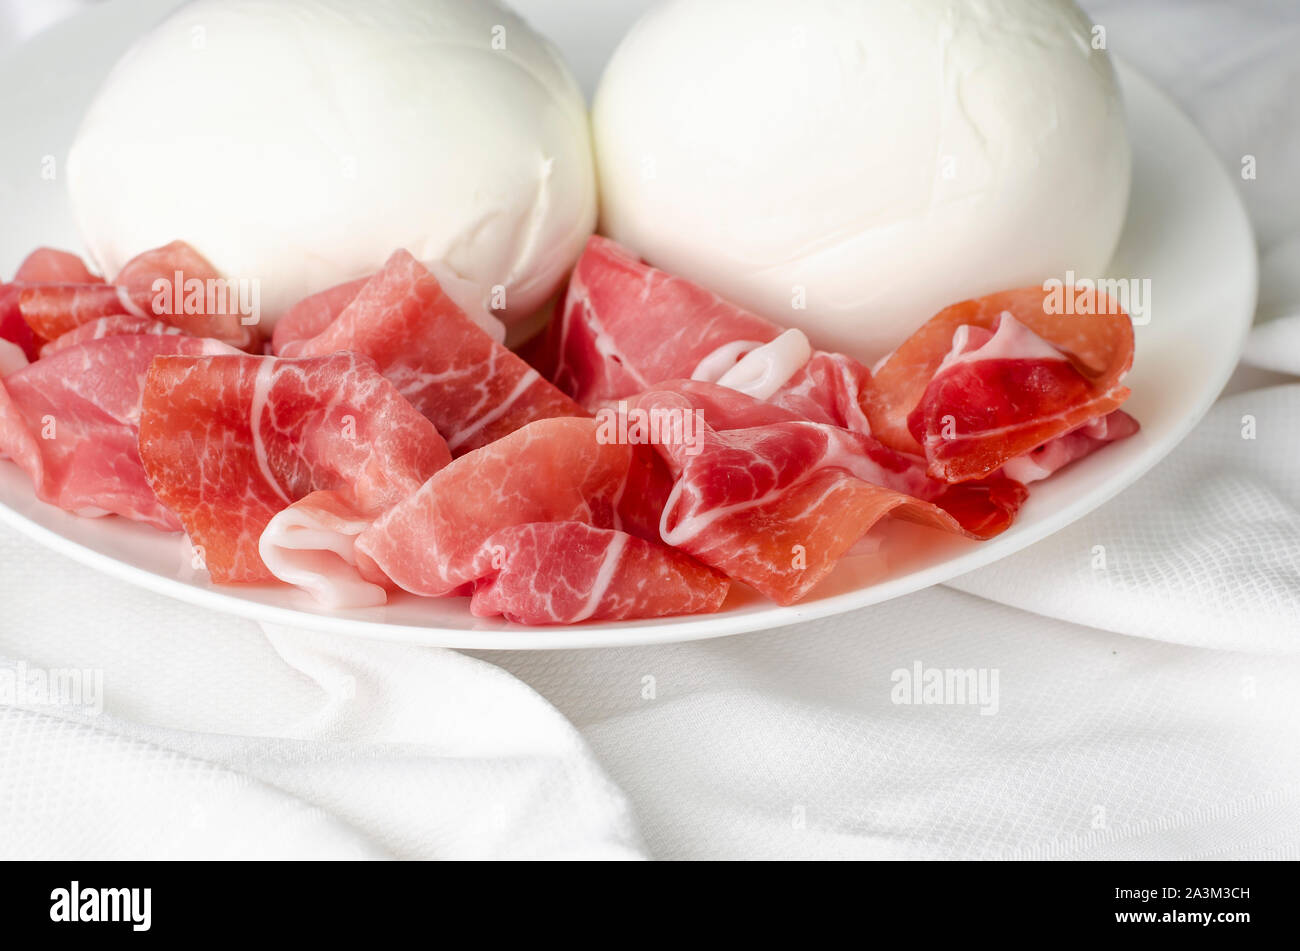 di Stock for Photo on background. Alamy prosciutto - bufala space Mozzarella and cuisine, Italian crudo text white